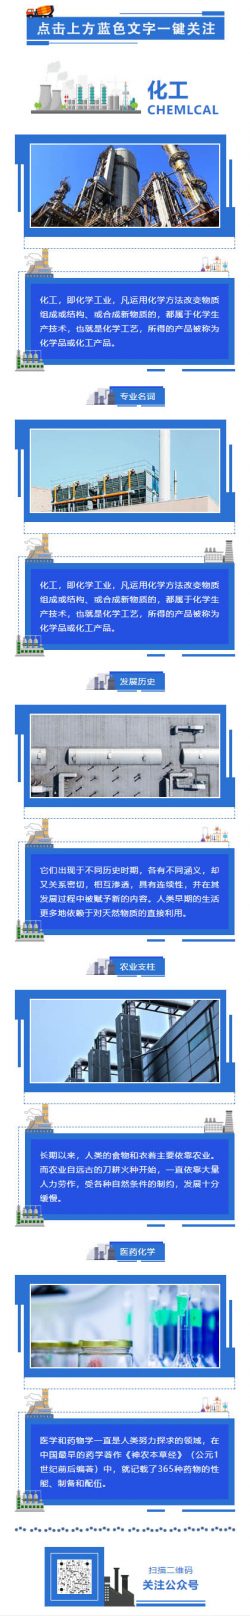 化工即化学工业蓝色工厂制造业微信模板推文素材